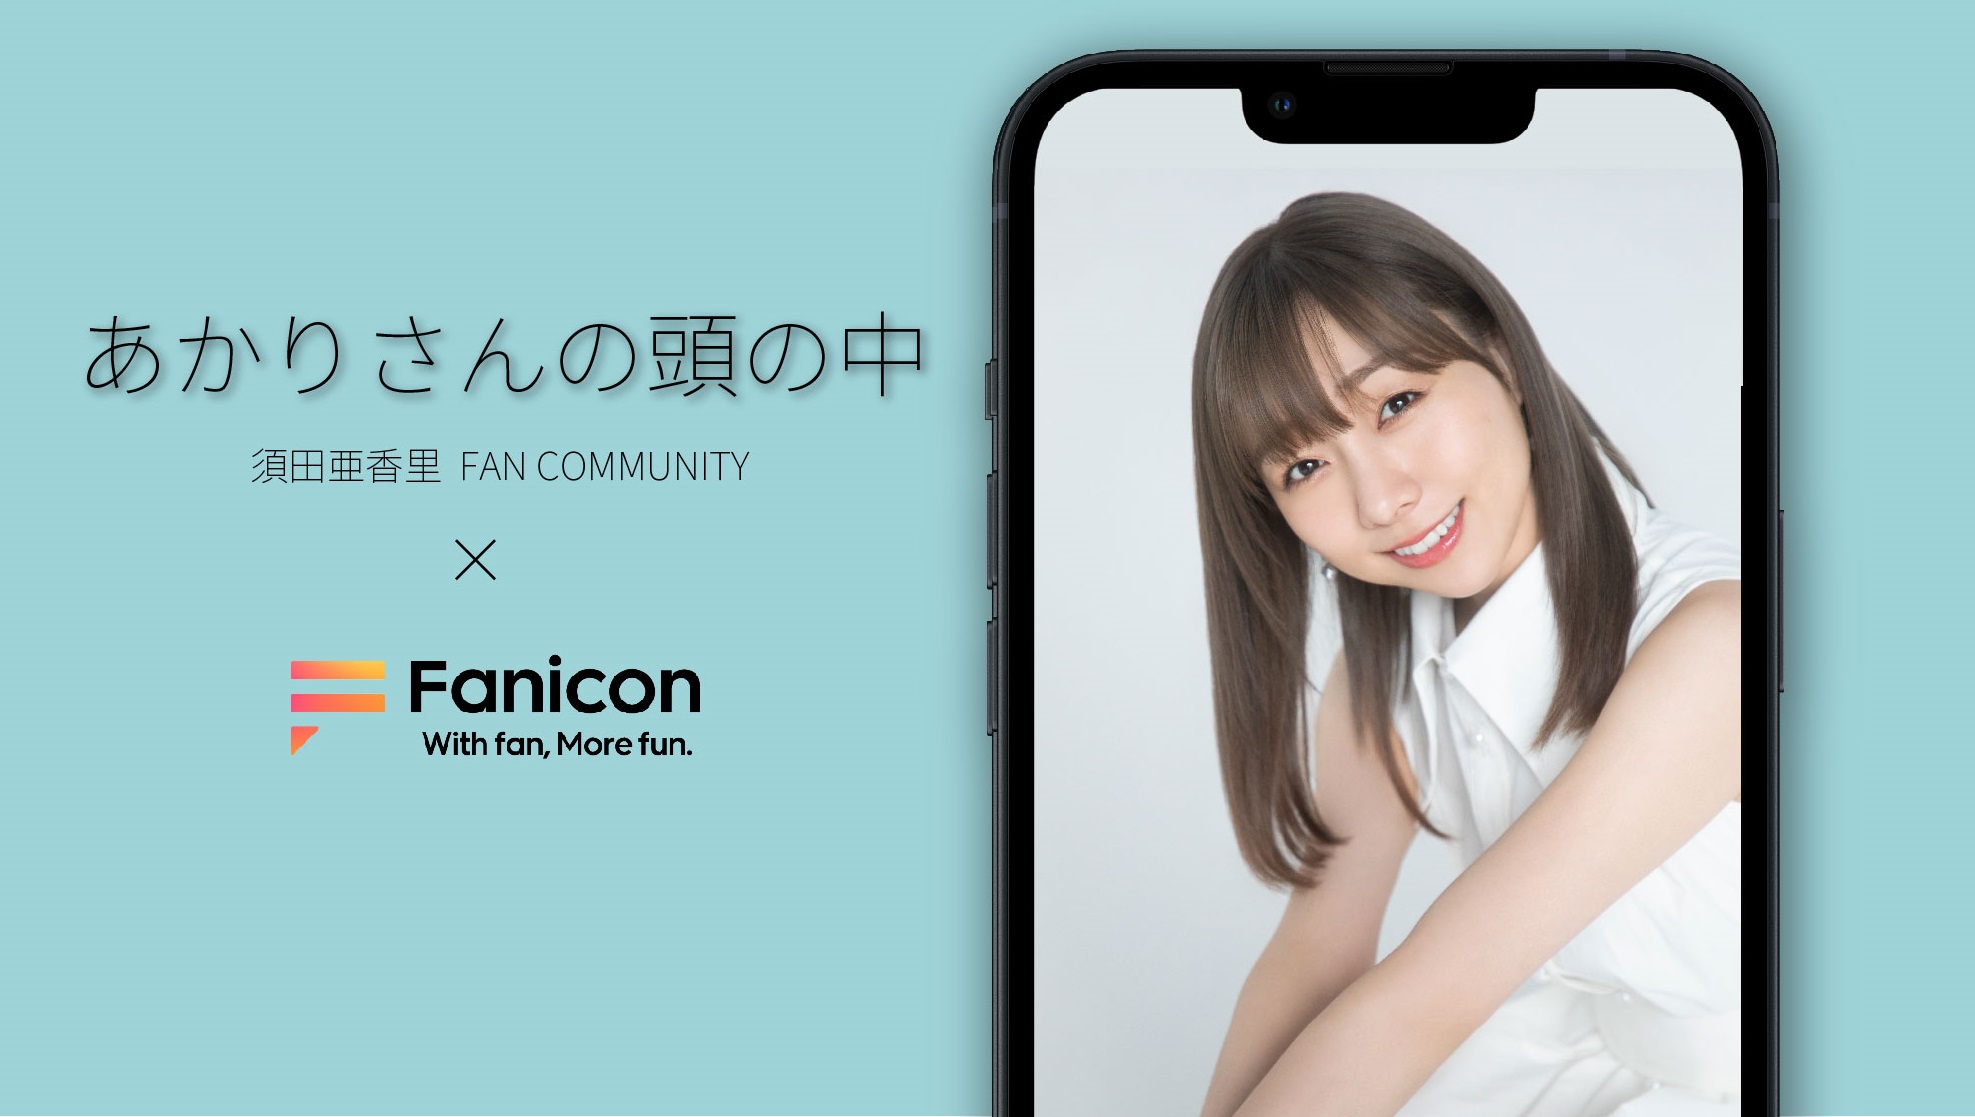 会員制ファンコミュニティプラットフォーム「Fanicon」に須田亜香里の公式ファンコミュニティ【あかりさんの頭の中】を開設